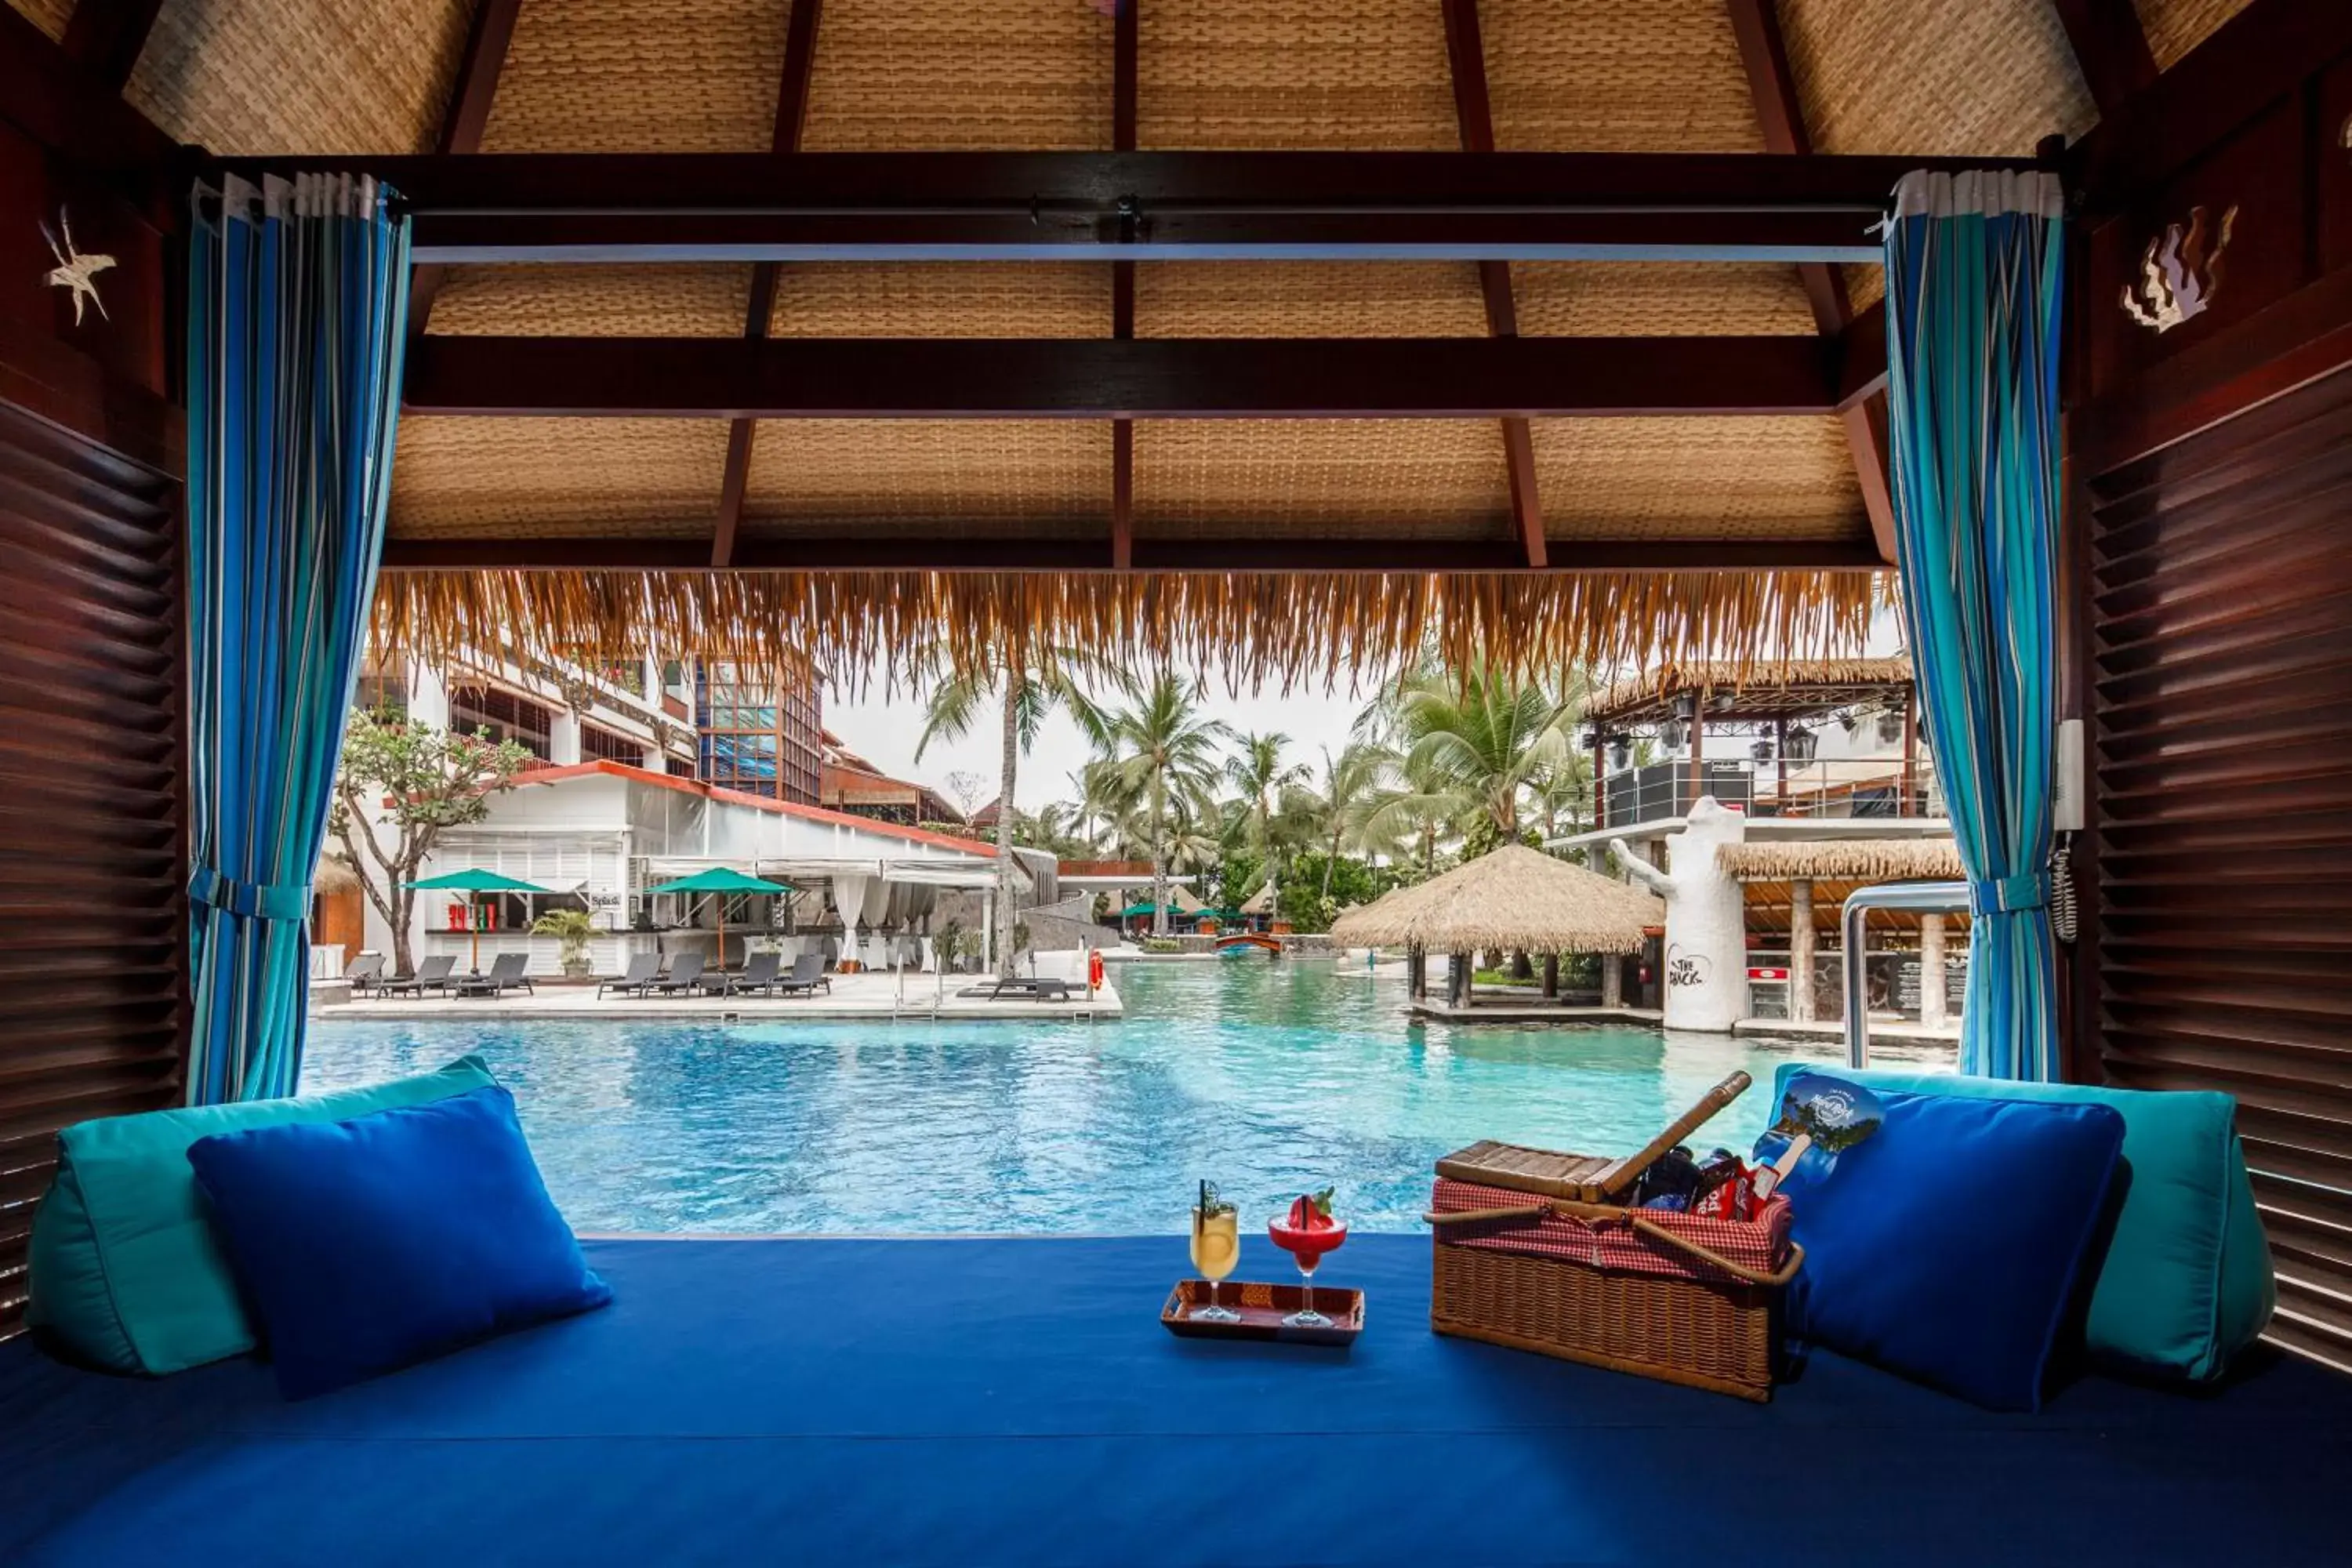 Swimming pool in Hard Rock Hotel Bali